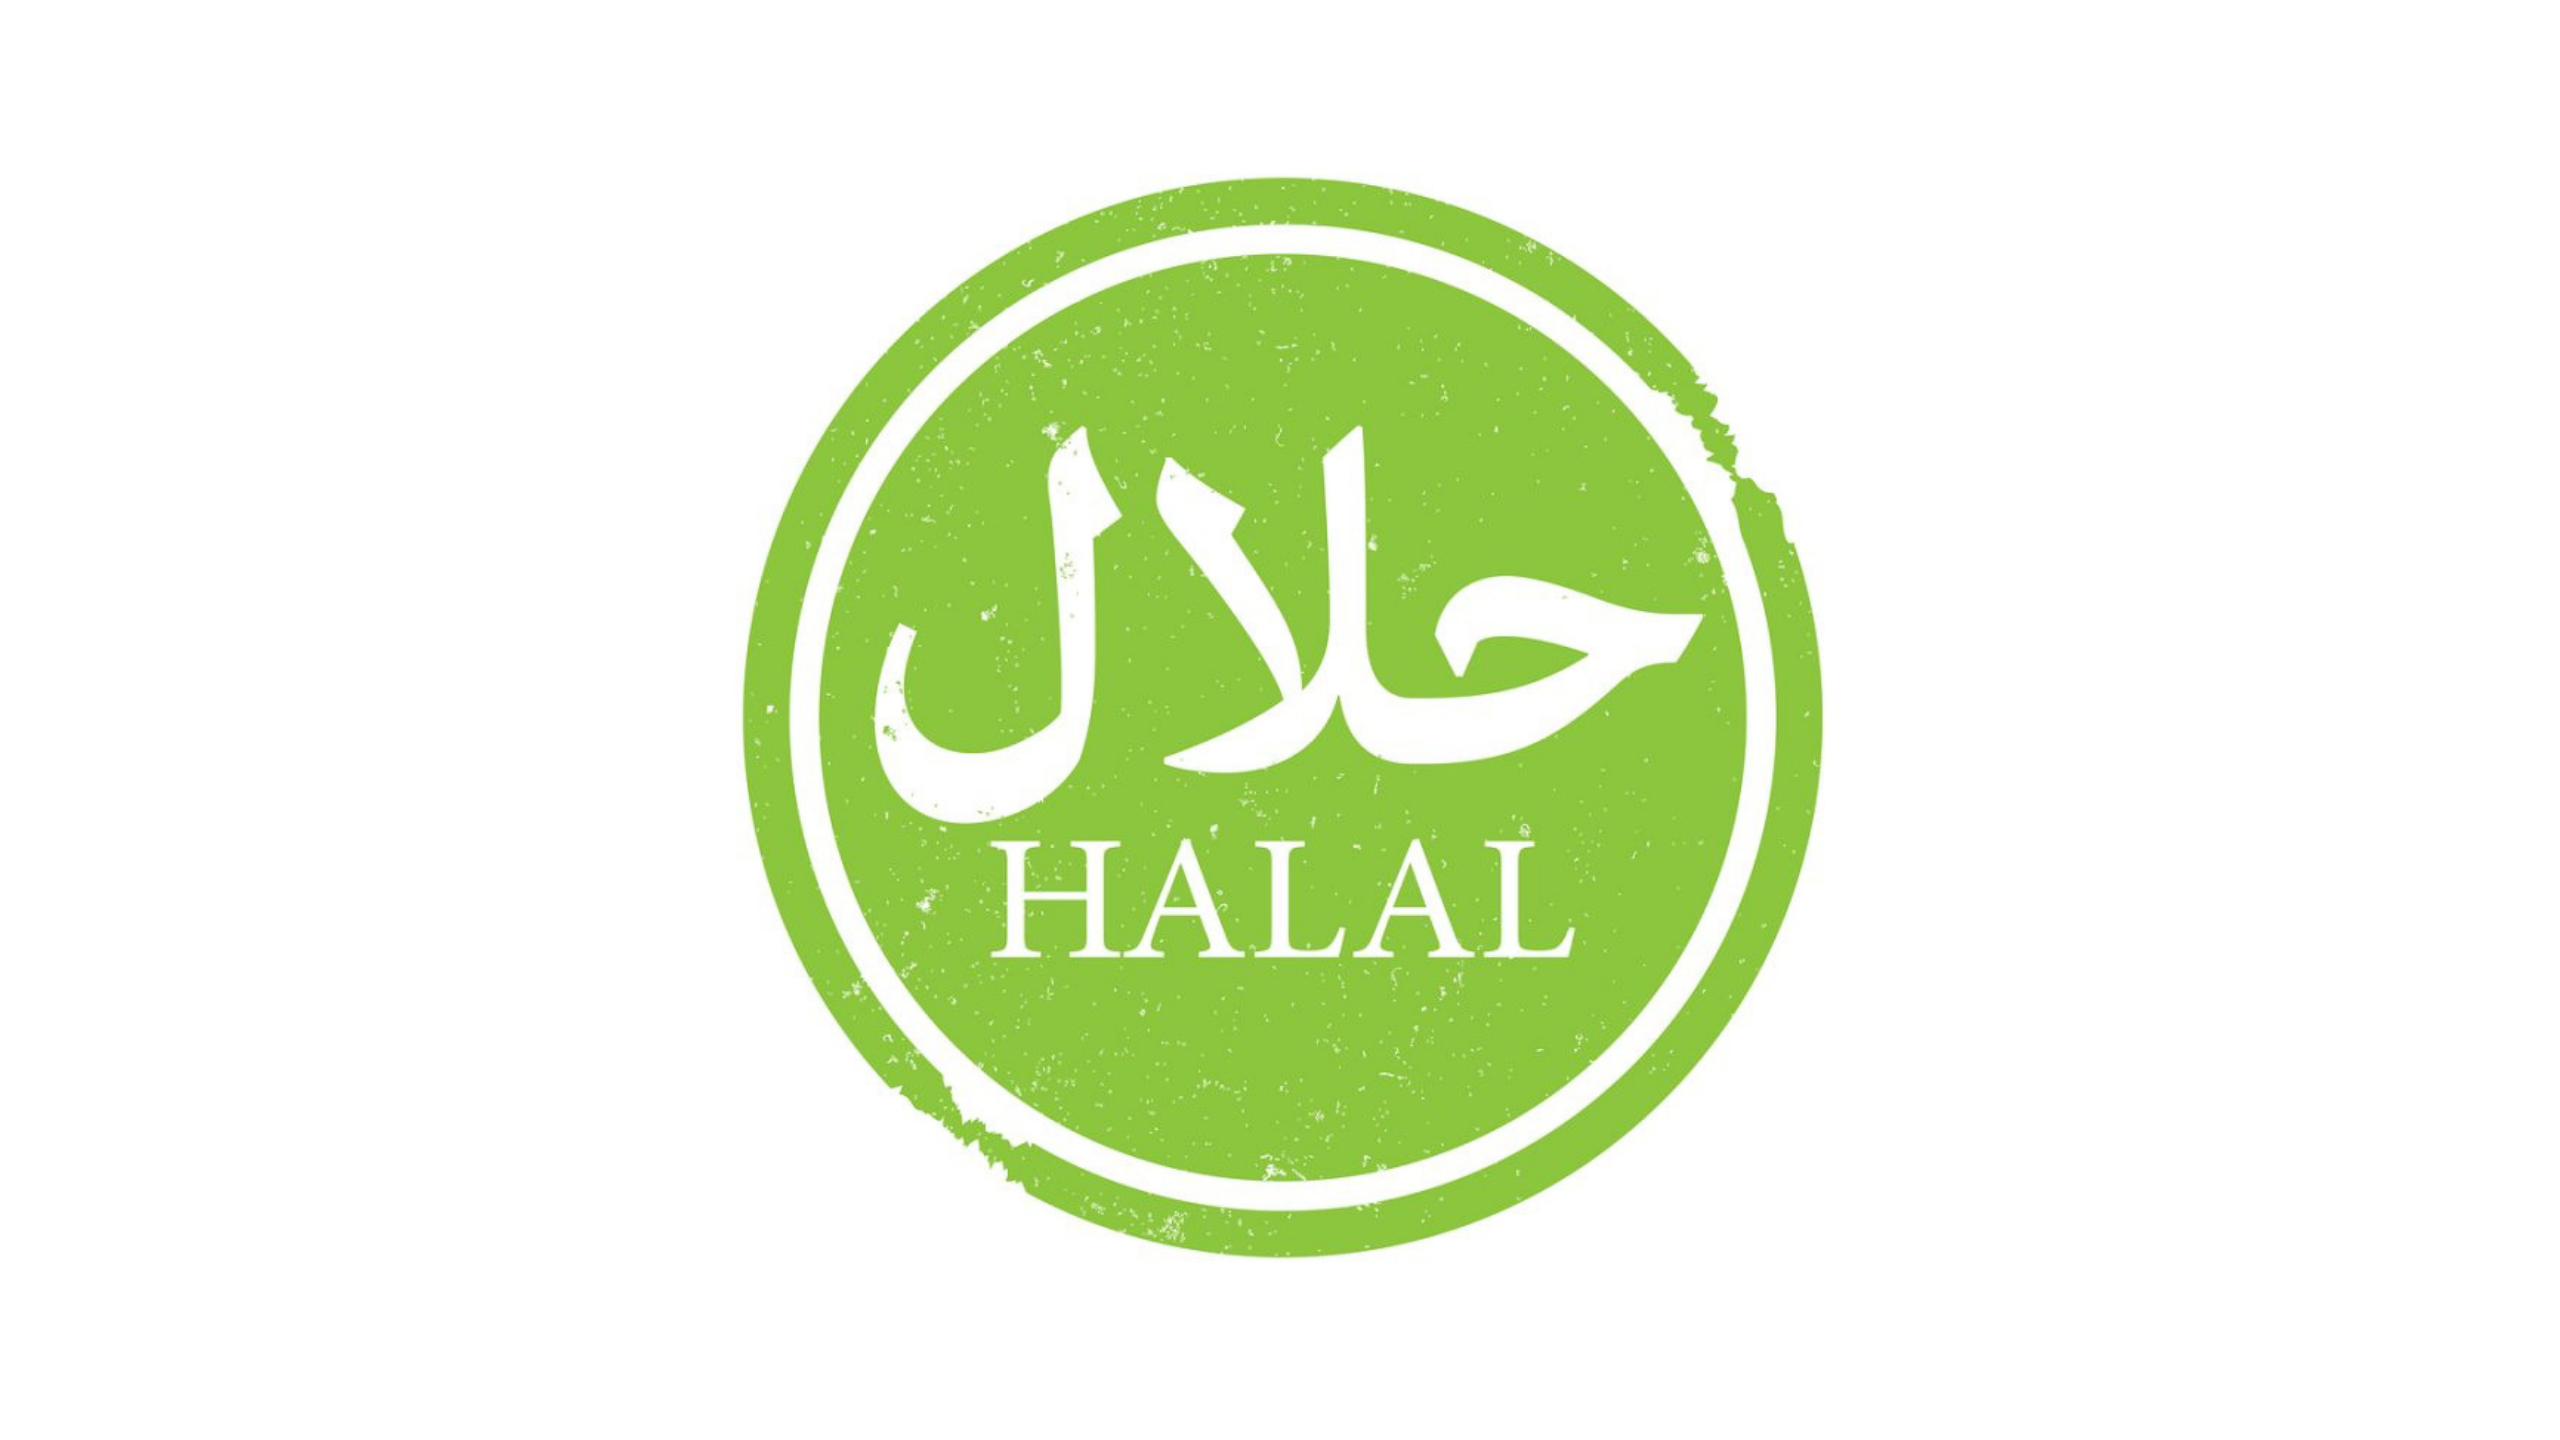 Вкус халяль. Халяль. Halal логотип. Символ Халяль. Халяль баннер.